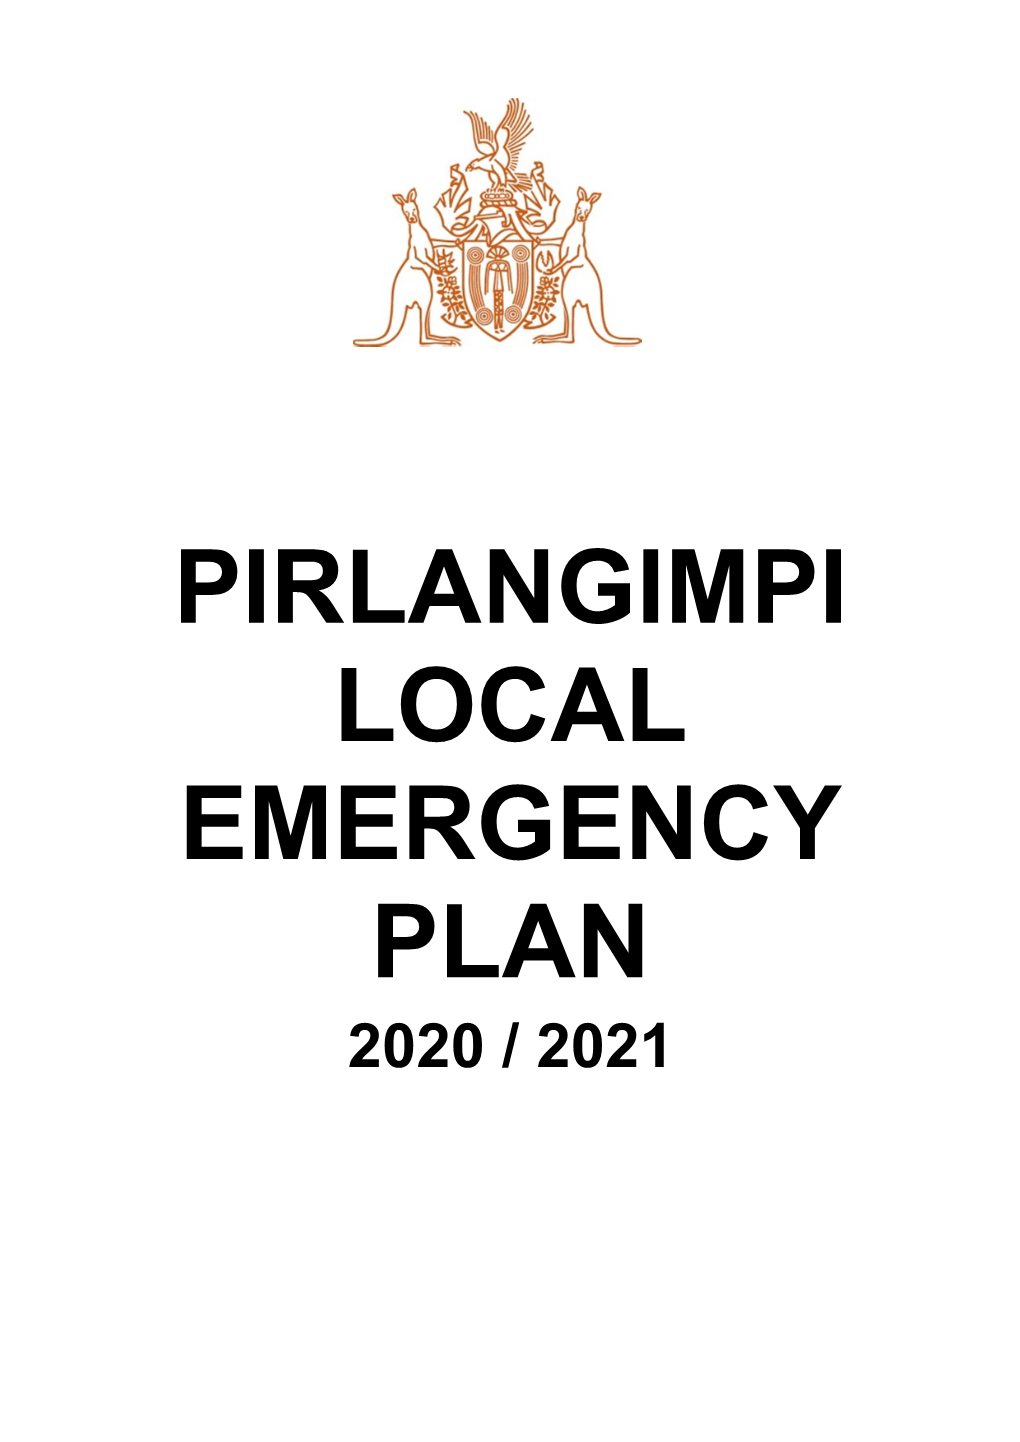 Pirlangimpi Local Emergency Plan 2020 / 2021